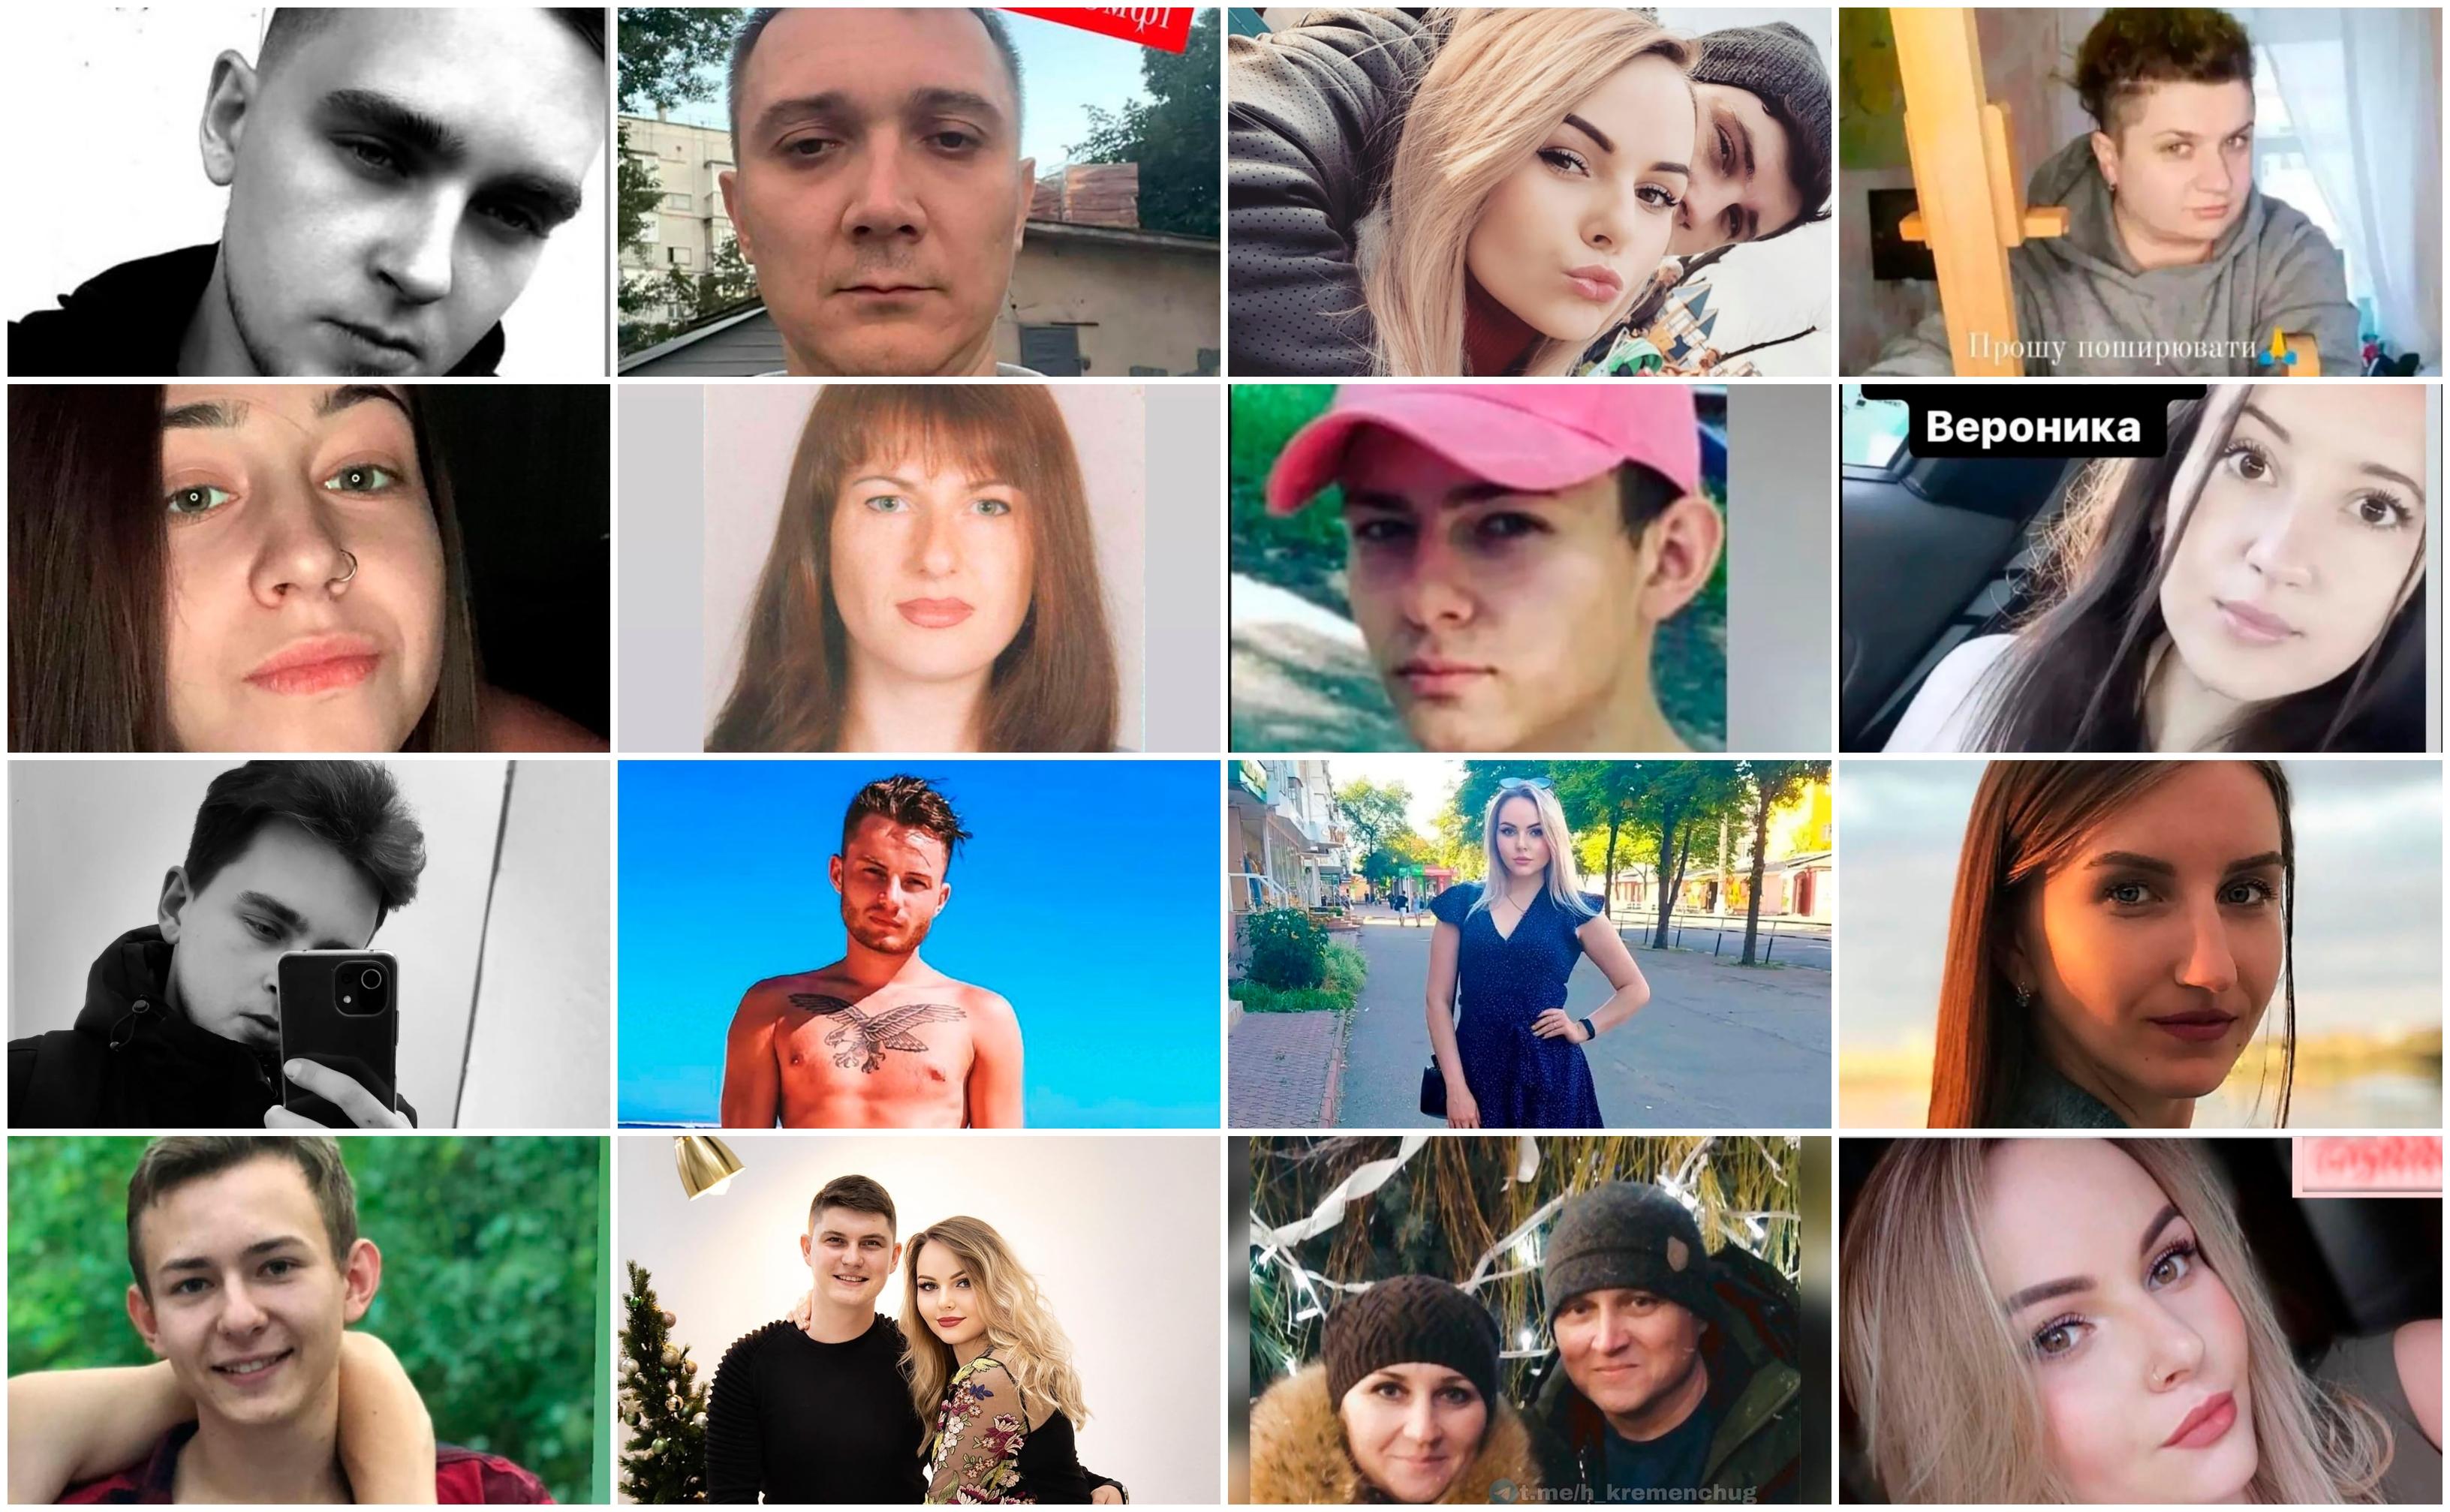 Ucrainenii daţi dispăruţi în urma atacului de la mall